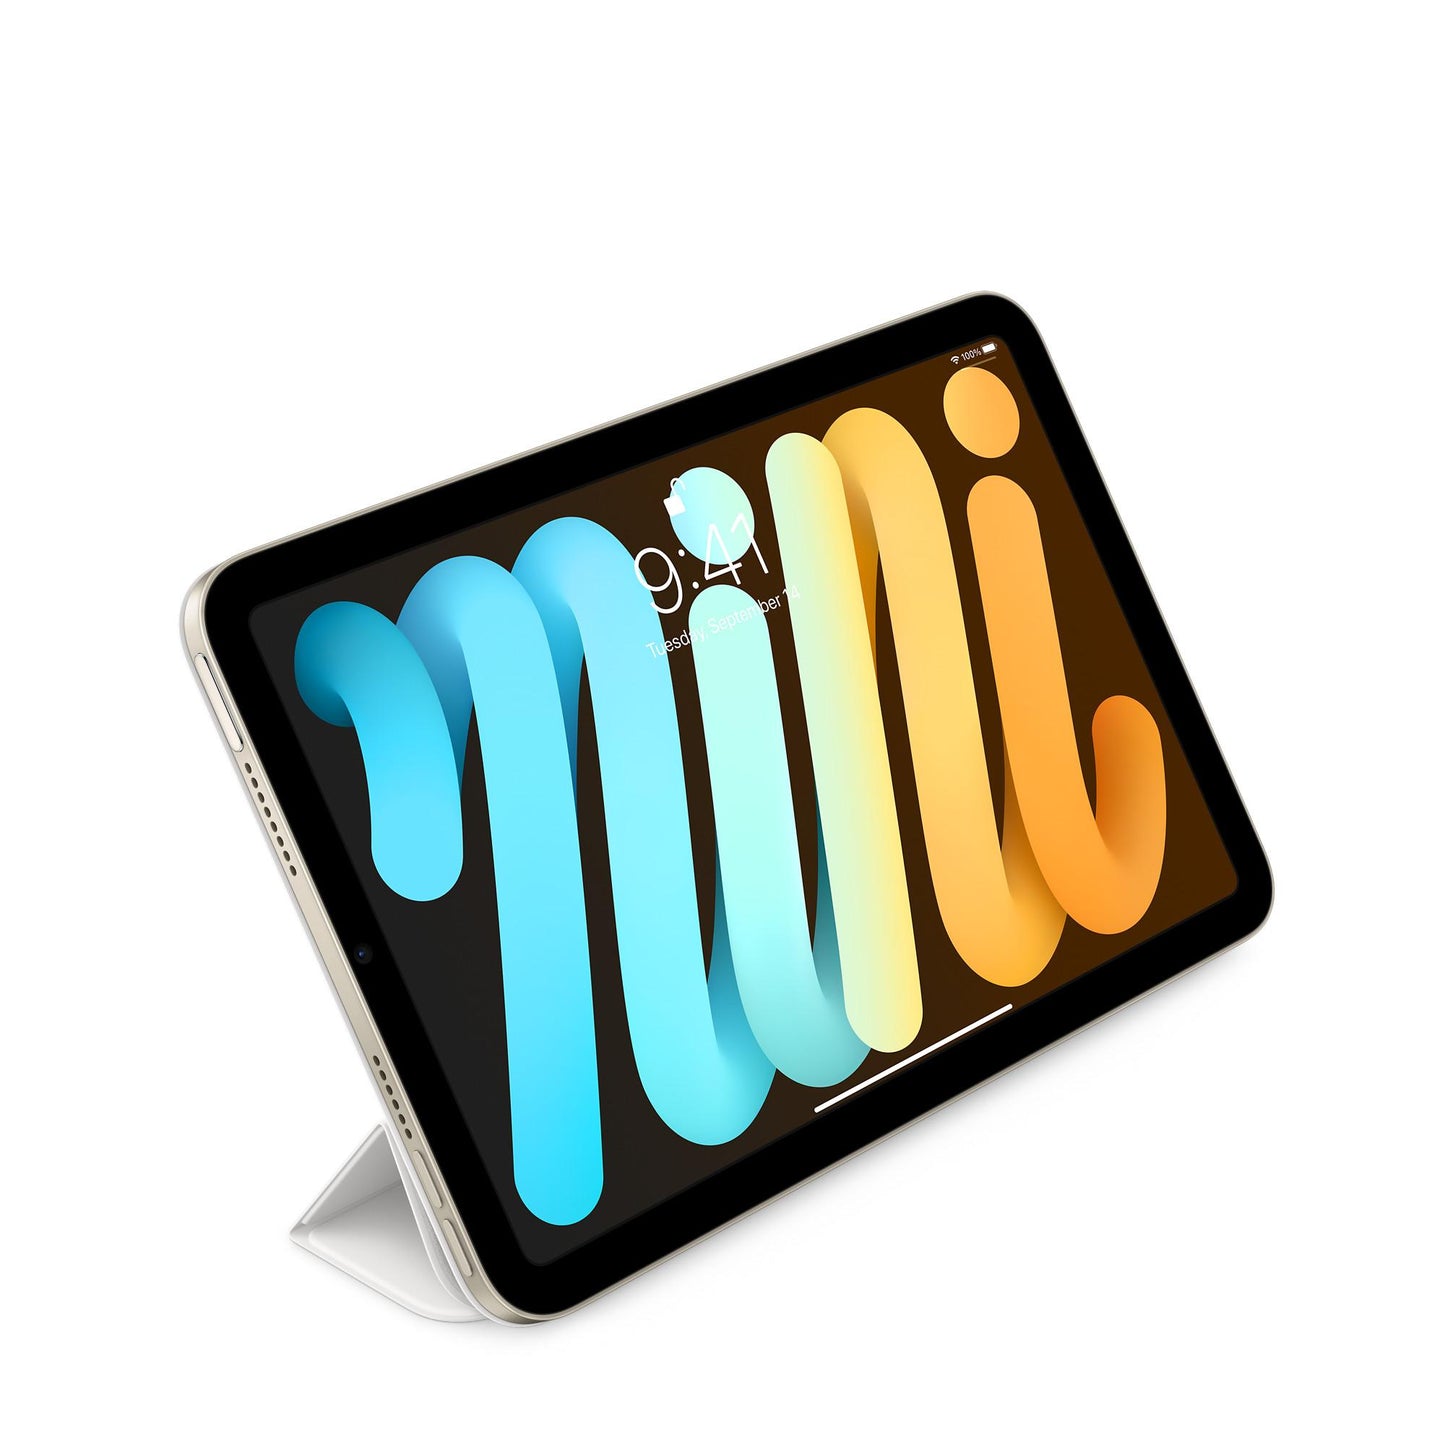 المحفظة الذكي‏ة iPad mini — أبيض